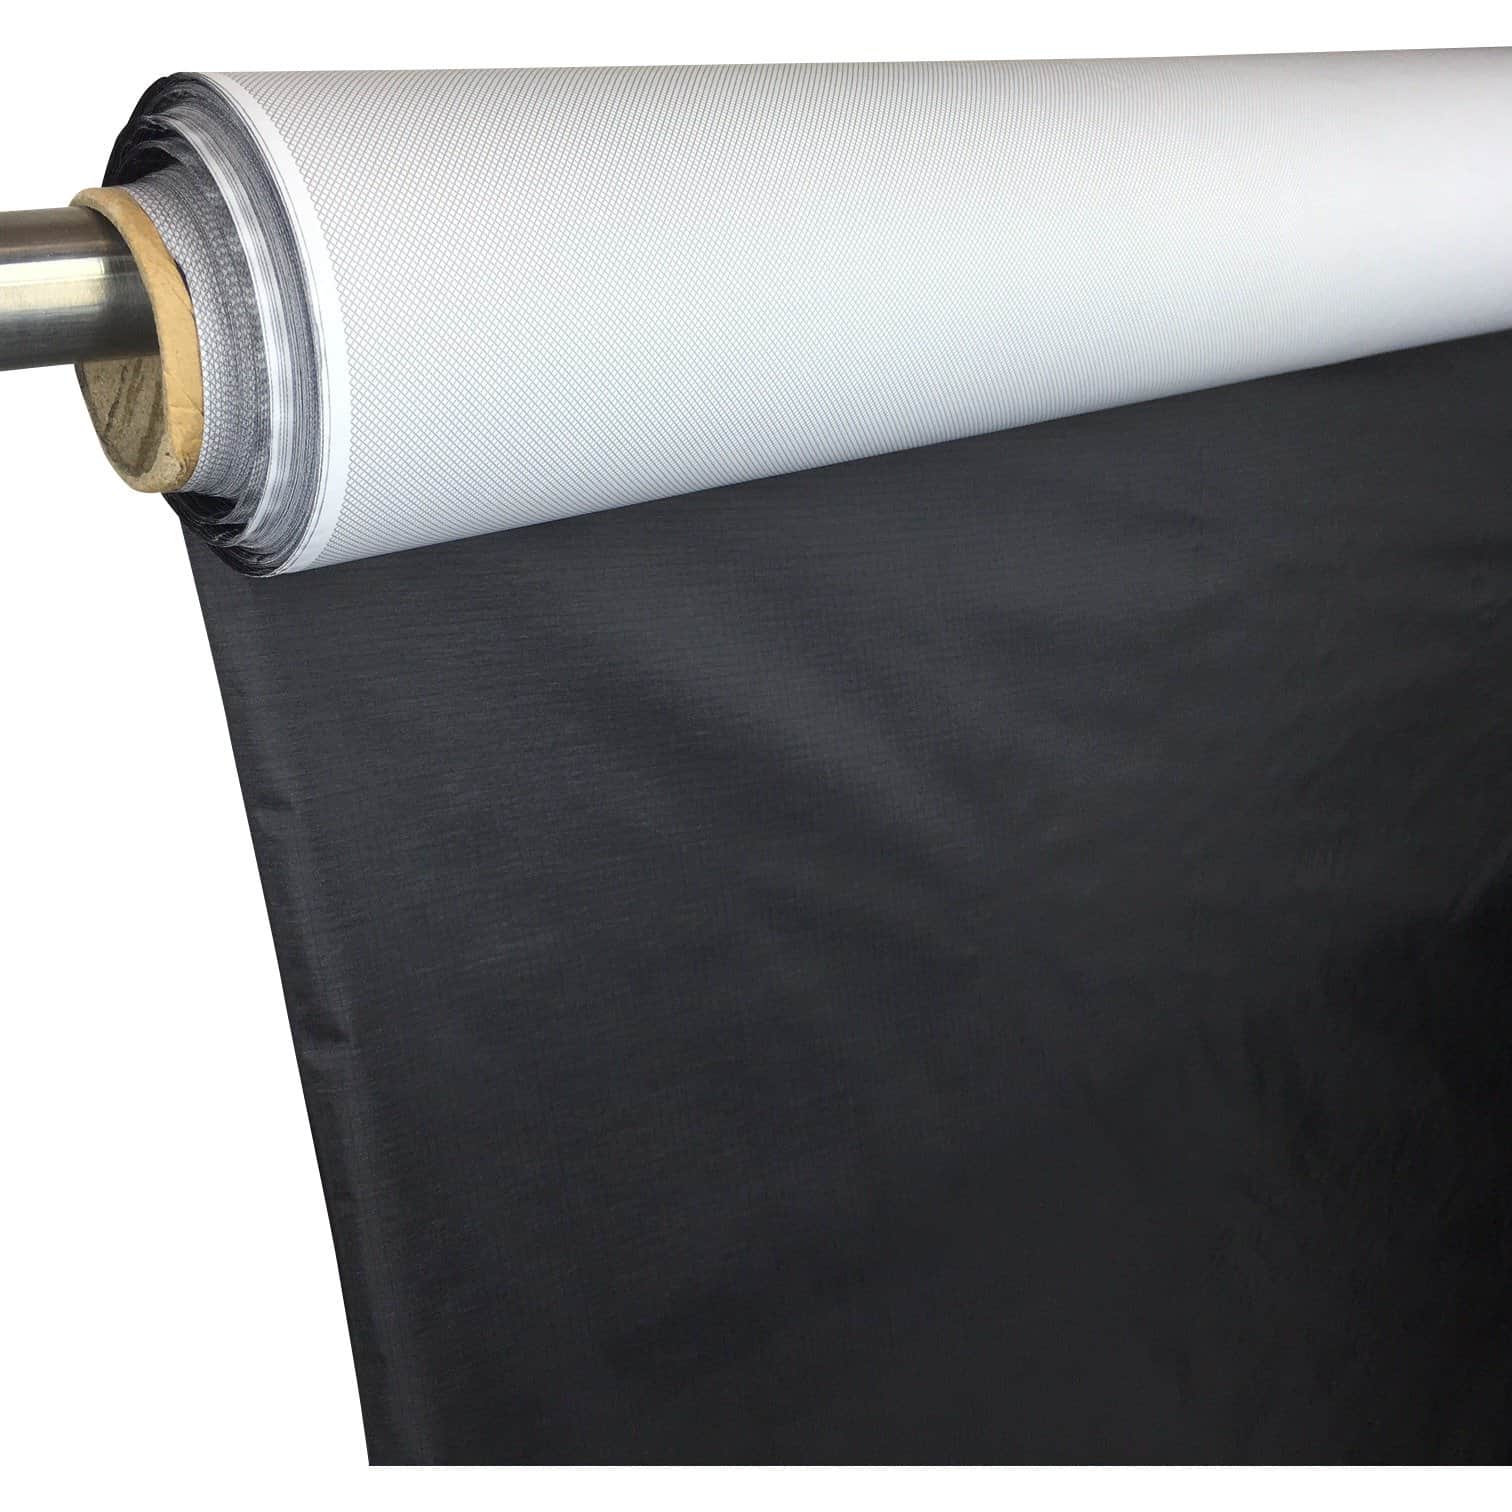 Wind Resistant Laminate/Composite Fabric